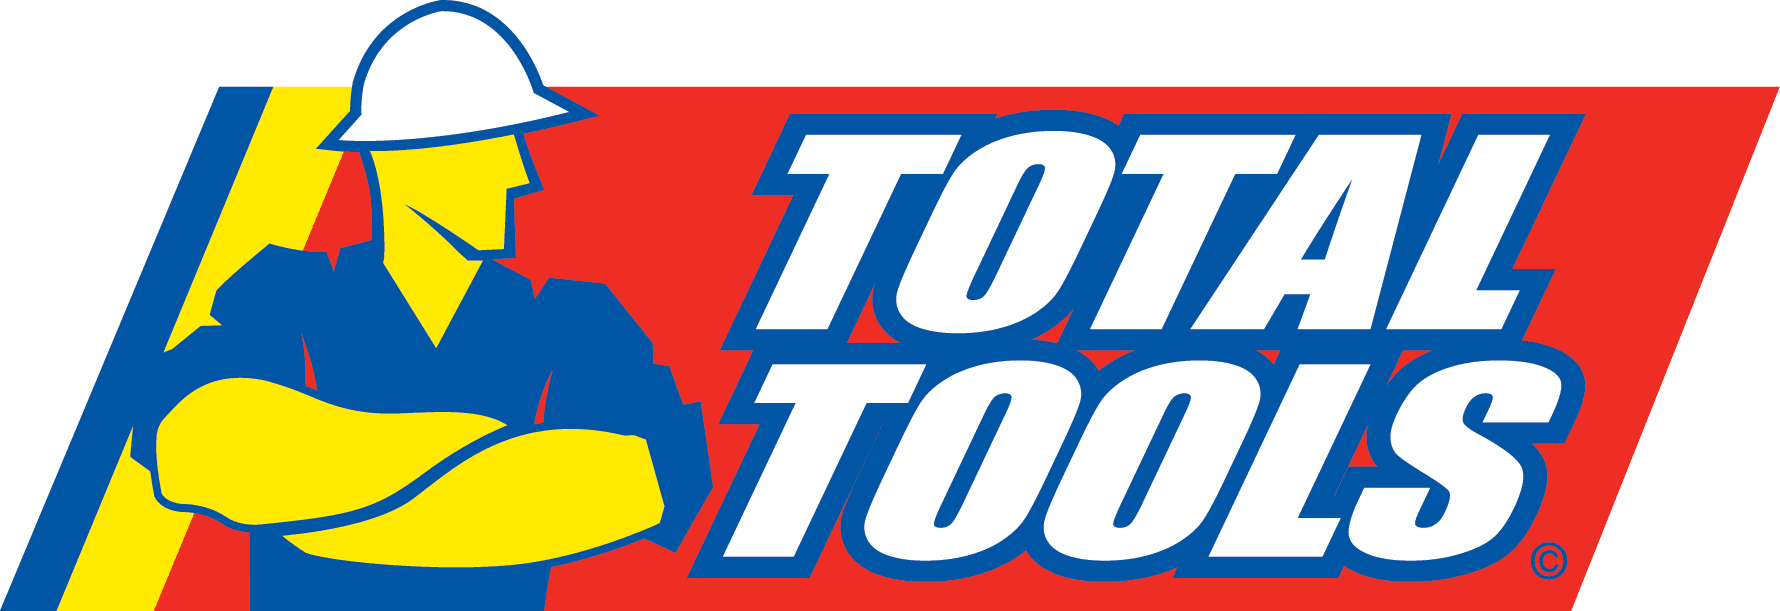 Total tools logo